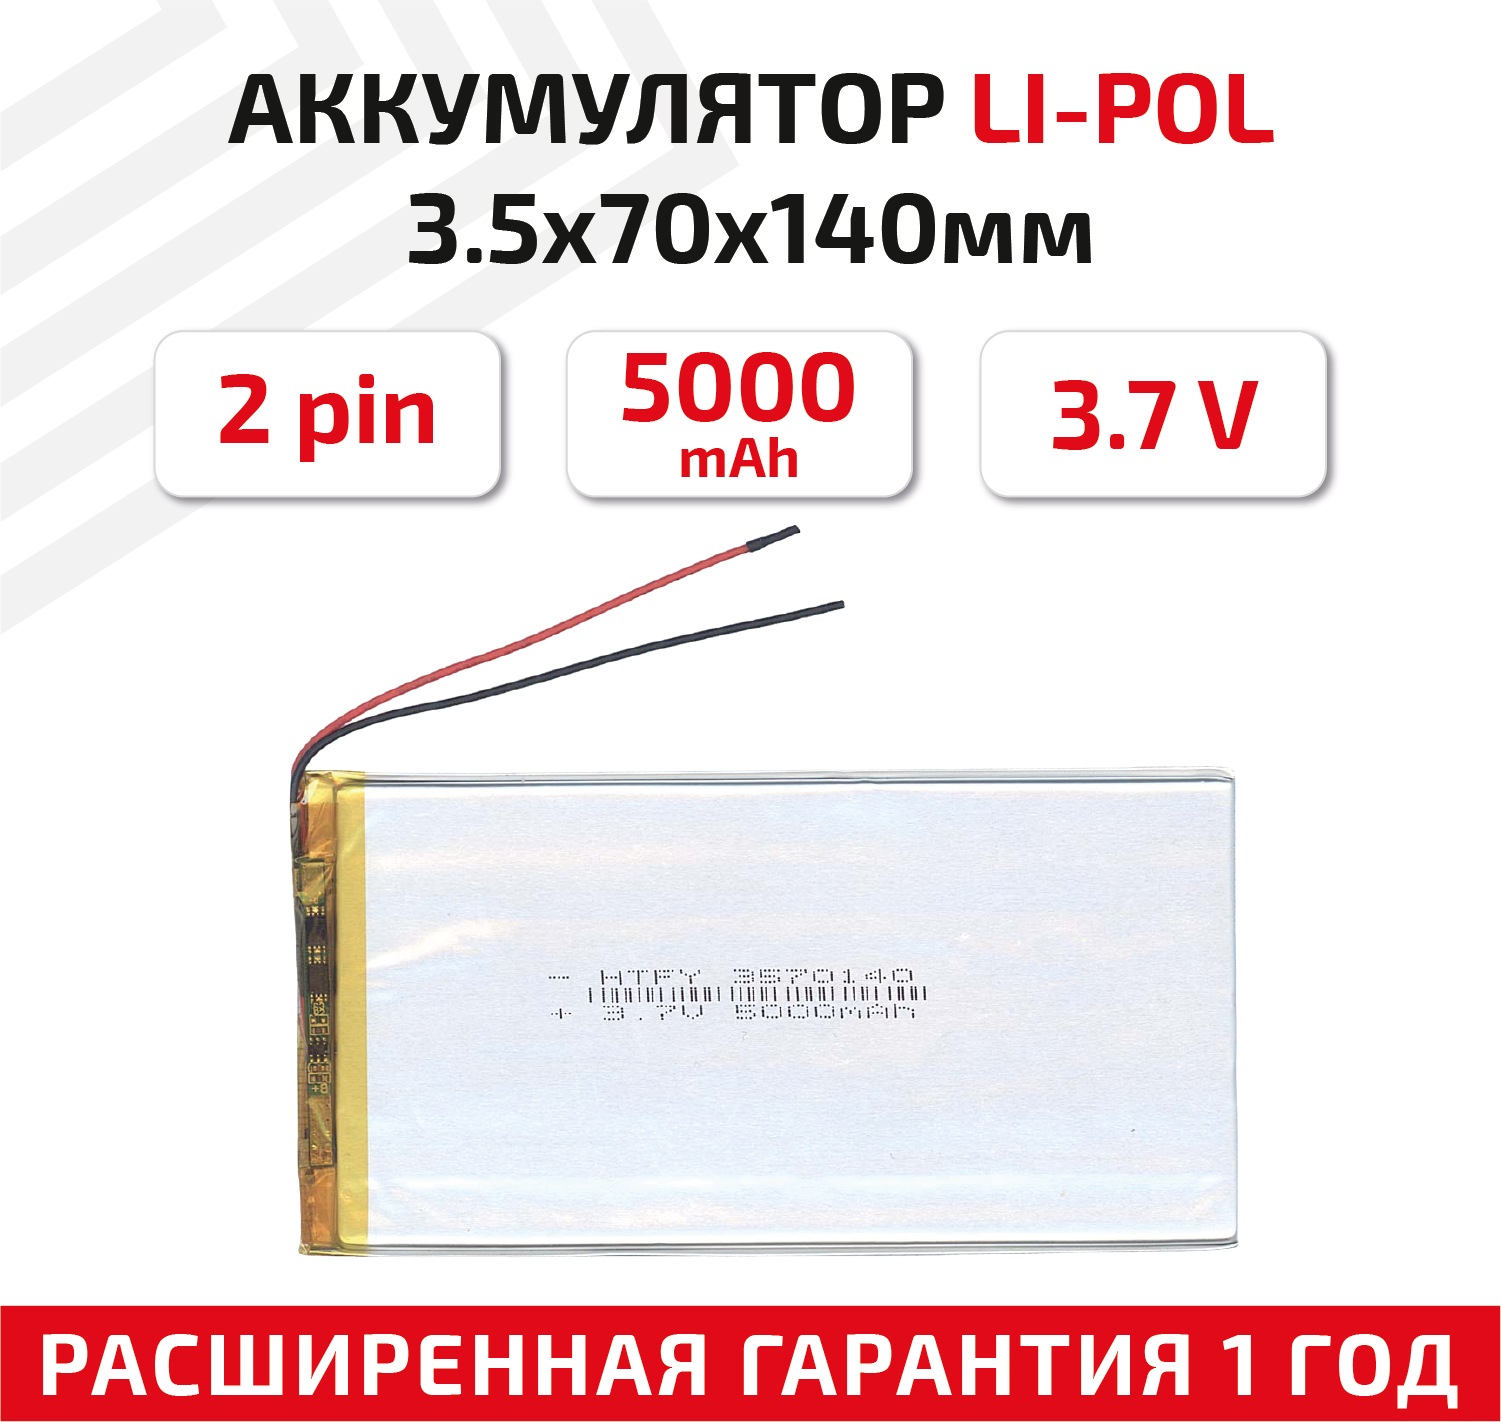 Универсальный аккумулятор (АКБ) для планшета, видеорегистратора и др, 3.5х70х140мм, 5000мАч, 3.7В, Li-Pol, 2pin (на 2 провода)